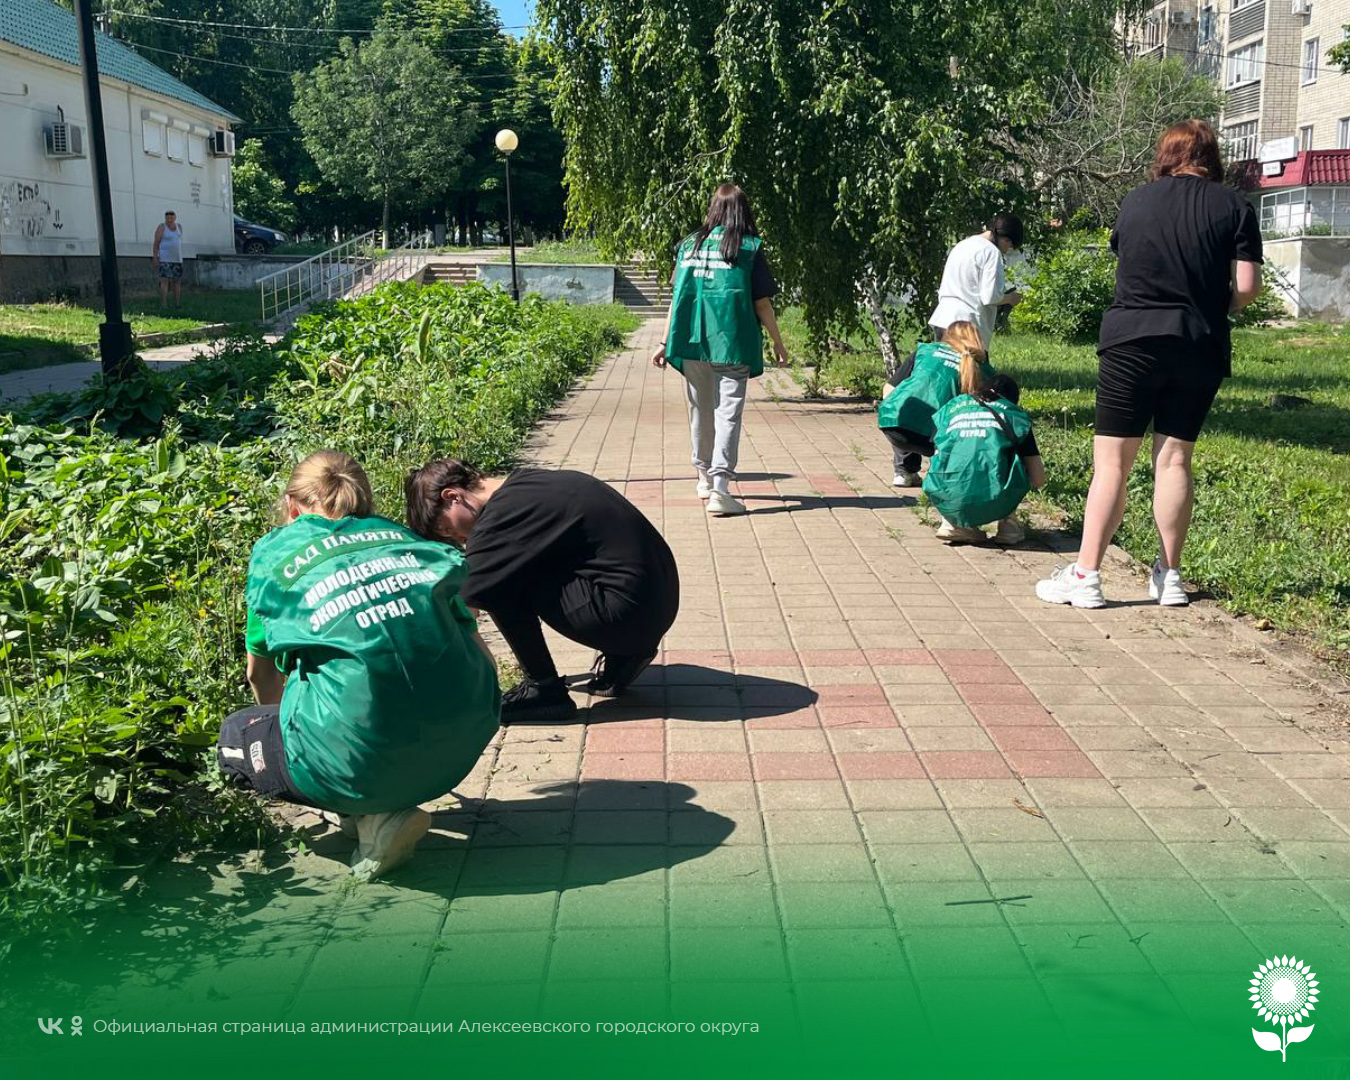 Алексеевские студенты и школьники помогают благоустраивать город.